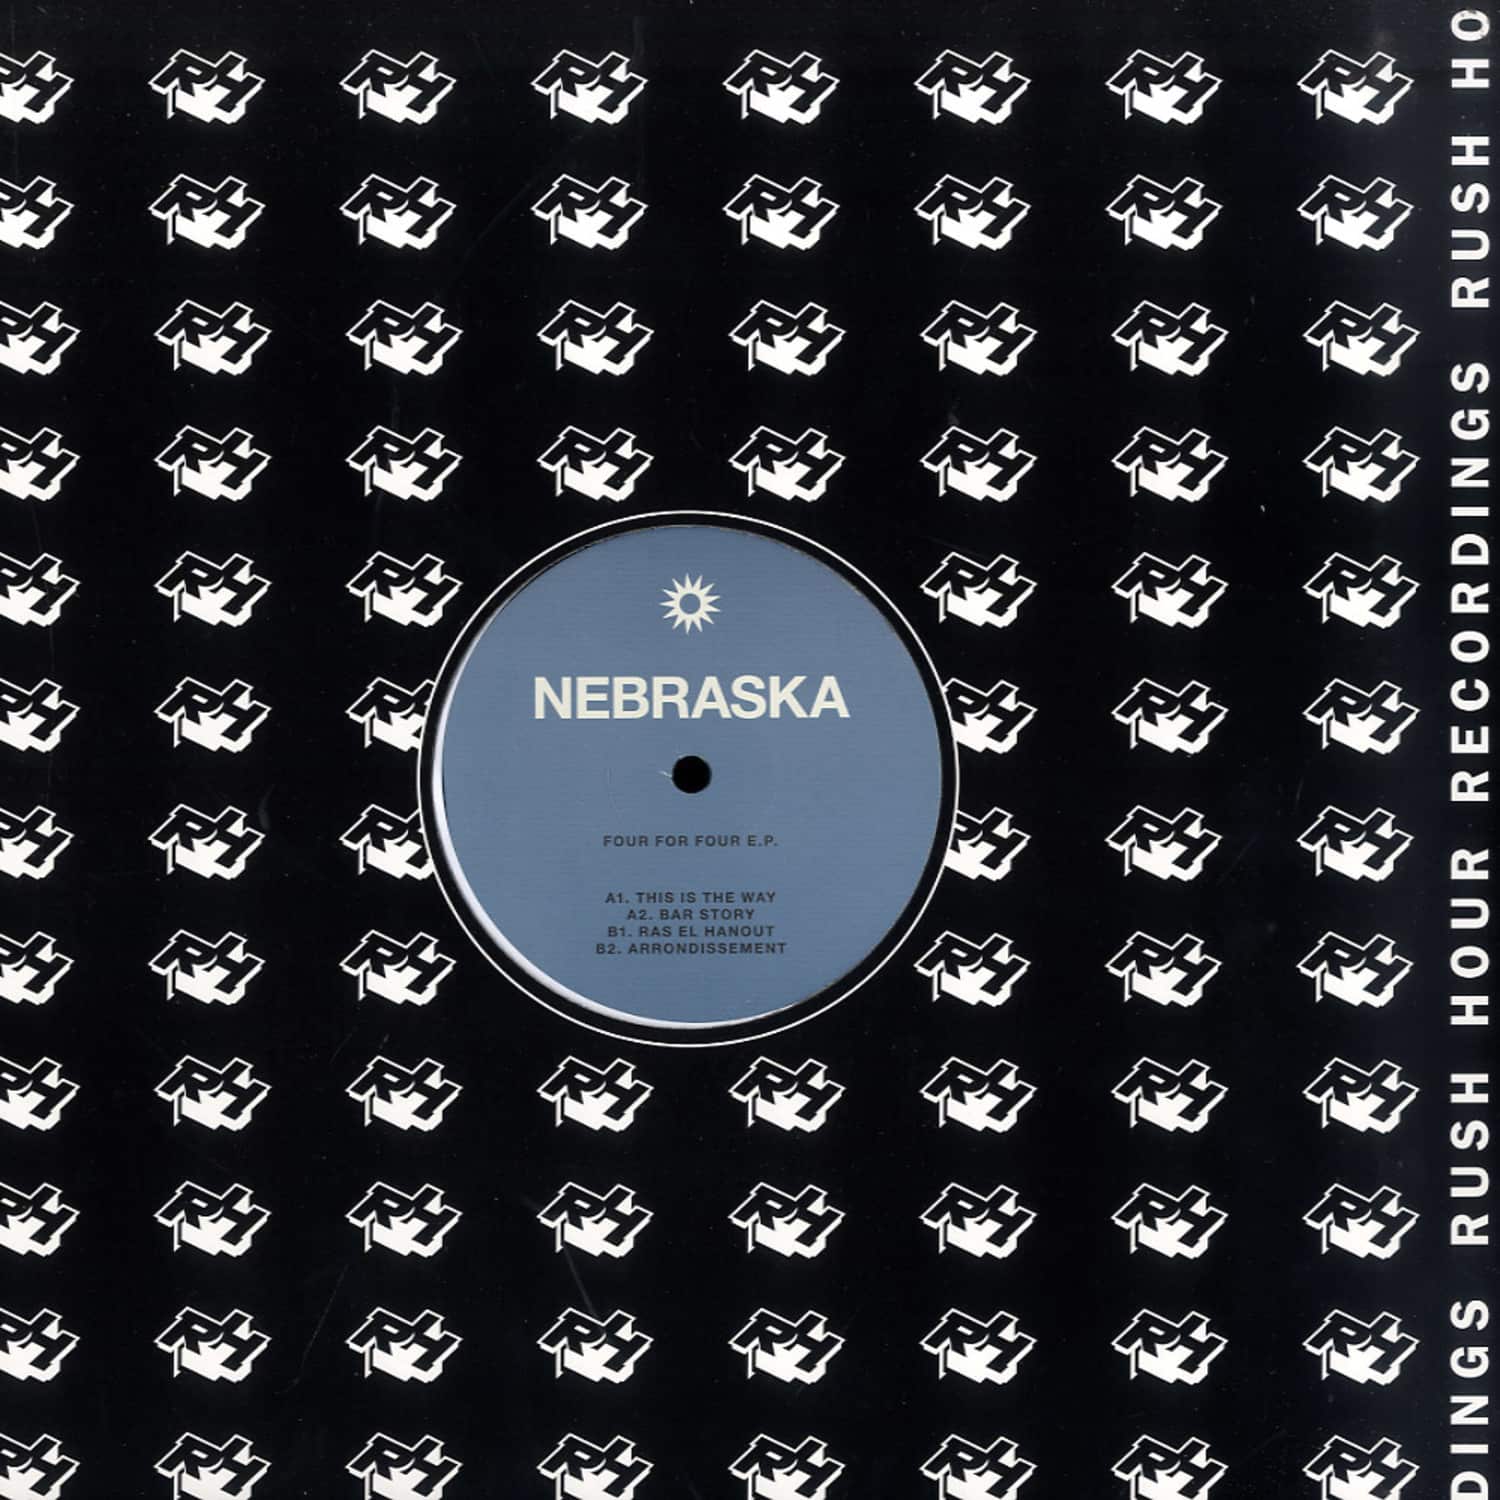 Nebraska - FOUR FOR FOUR EP